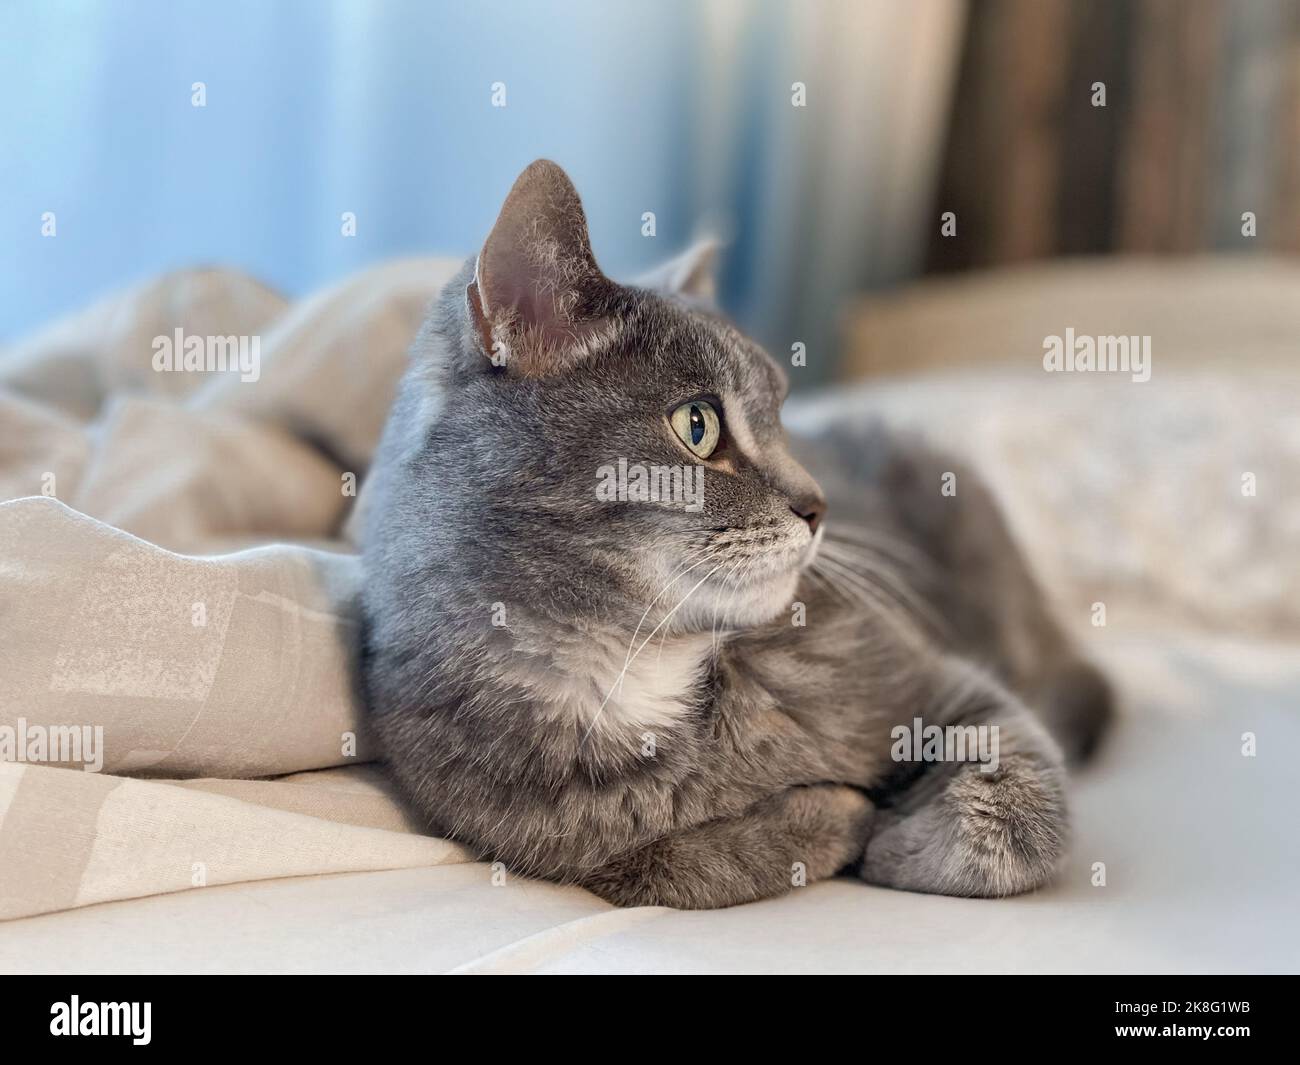 Un bel gatto grigio con ampi occhi verdi si trova sul letto e sembra intentemente da qualche parte. Foto Stock